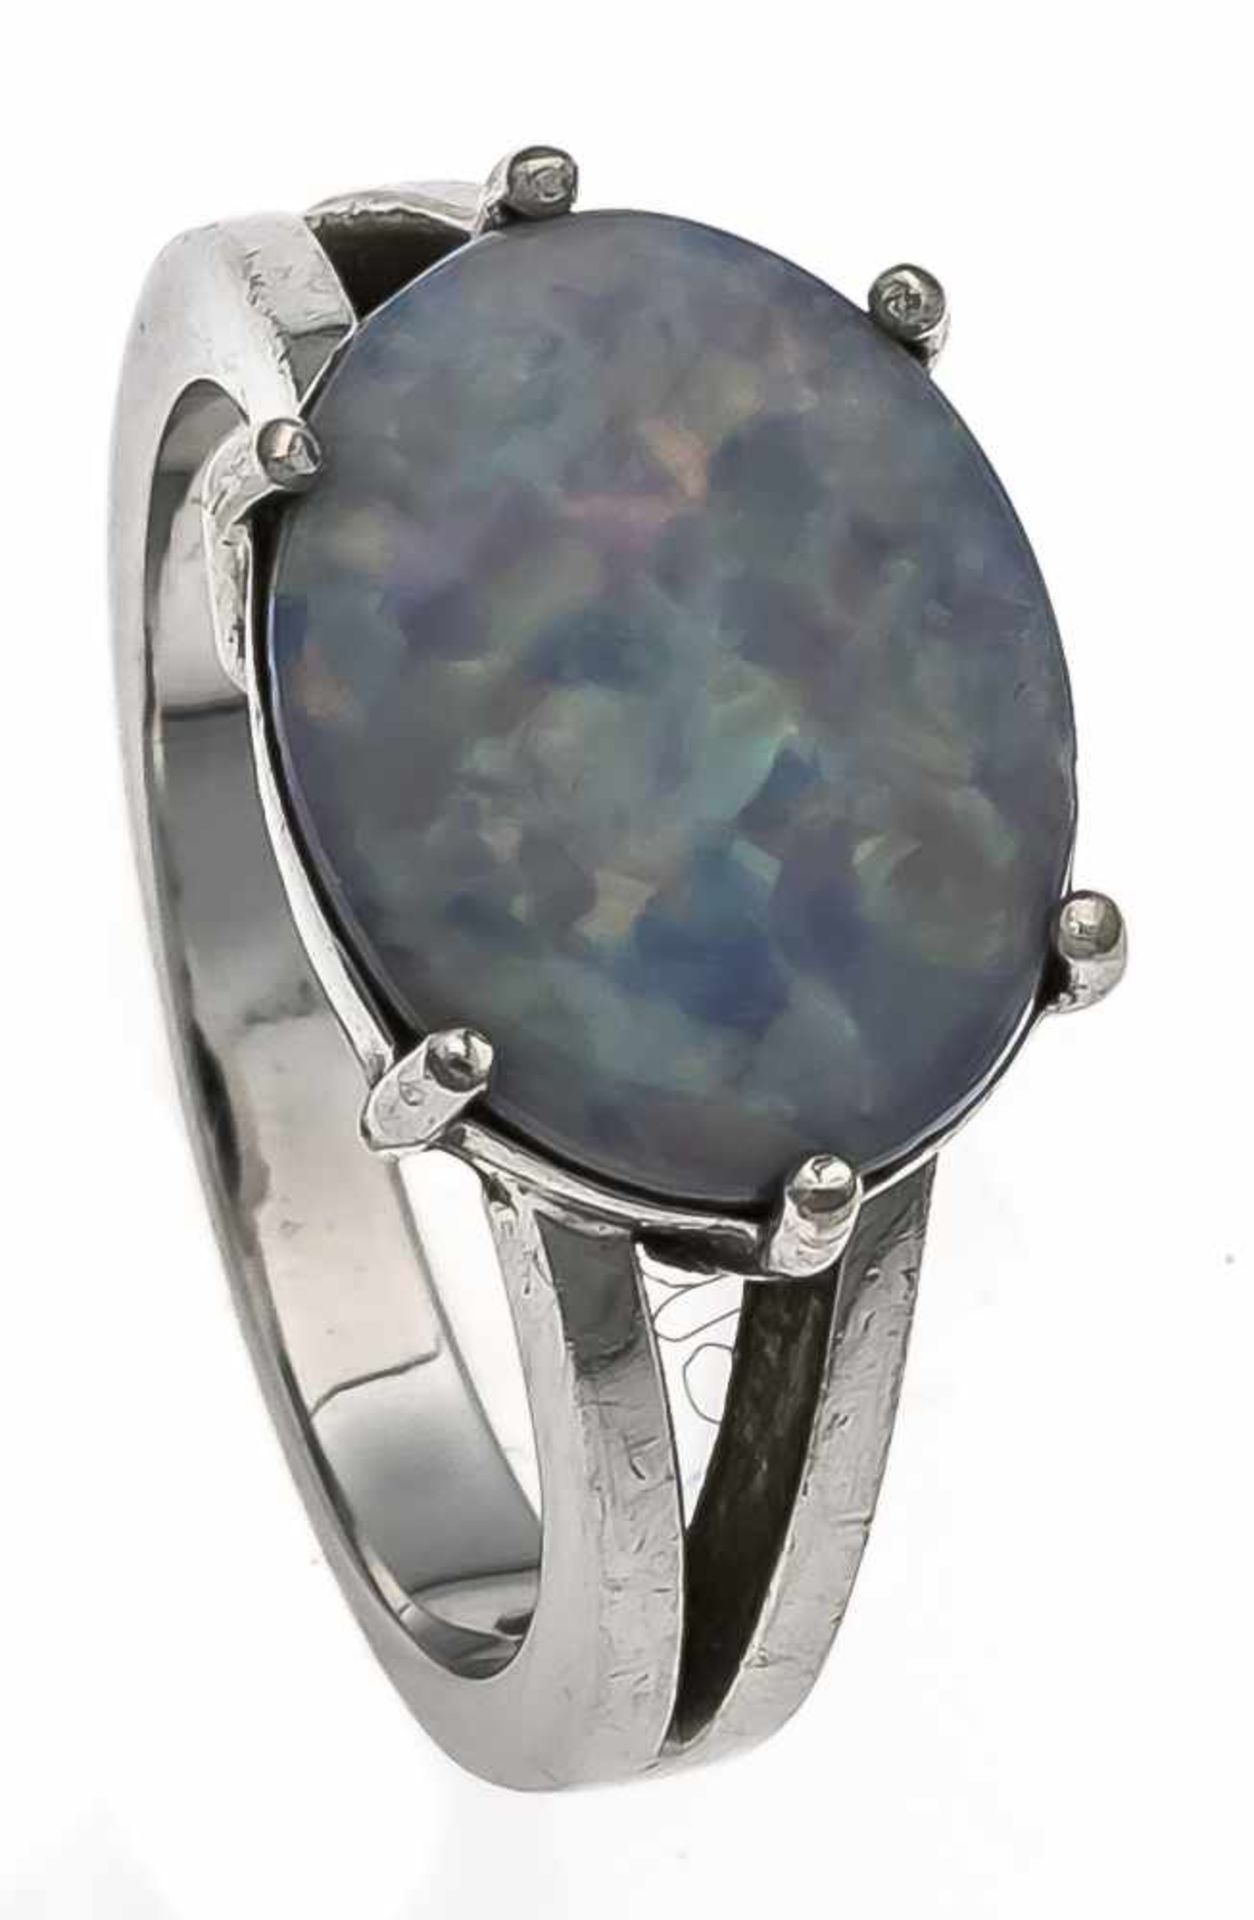 Opal-Ring WG 750/000 mit einem ovalen Opal-Cabochon mit gutem Farbspiel 11,5 x 9 mm, RG 46, 4,8 g